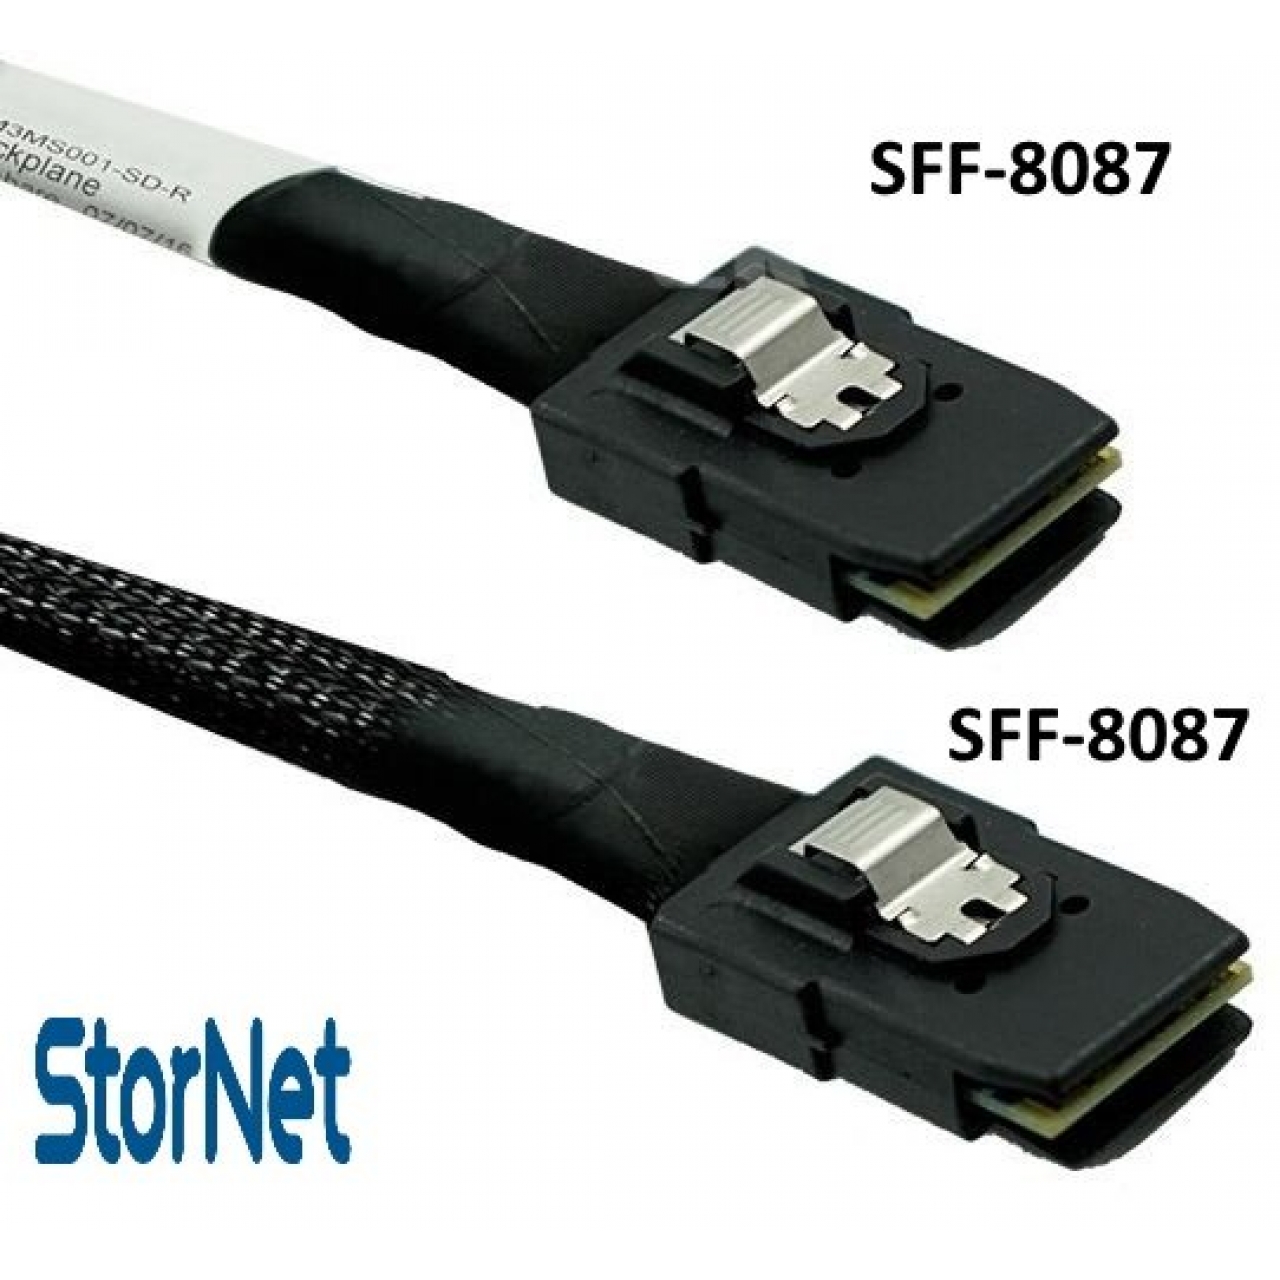 SAS Kablo Dahili RAID Kablosu SFF 8087 to SFF 8087 uzunluk 80 cm